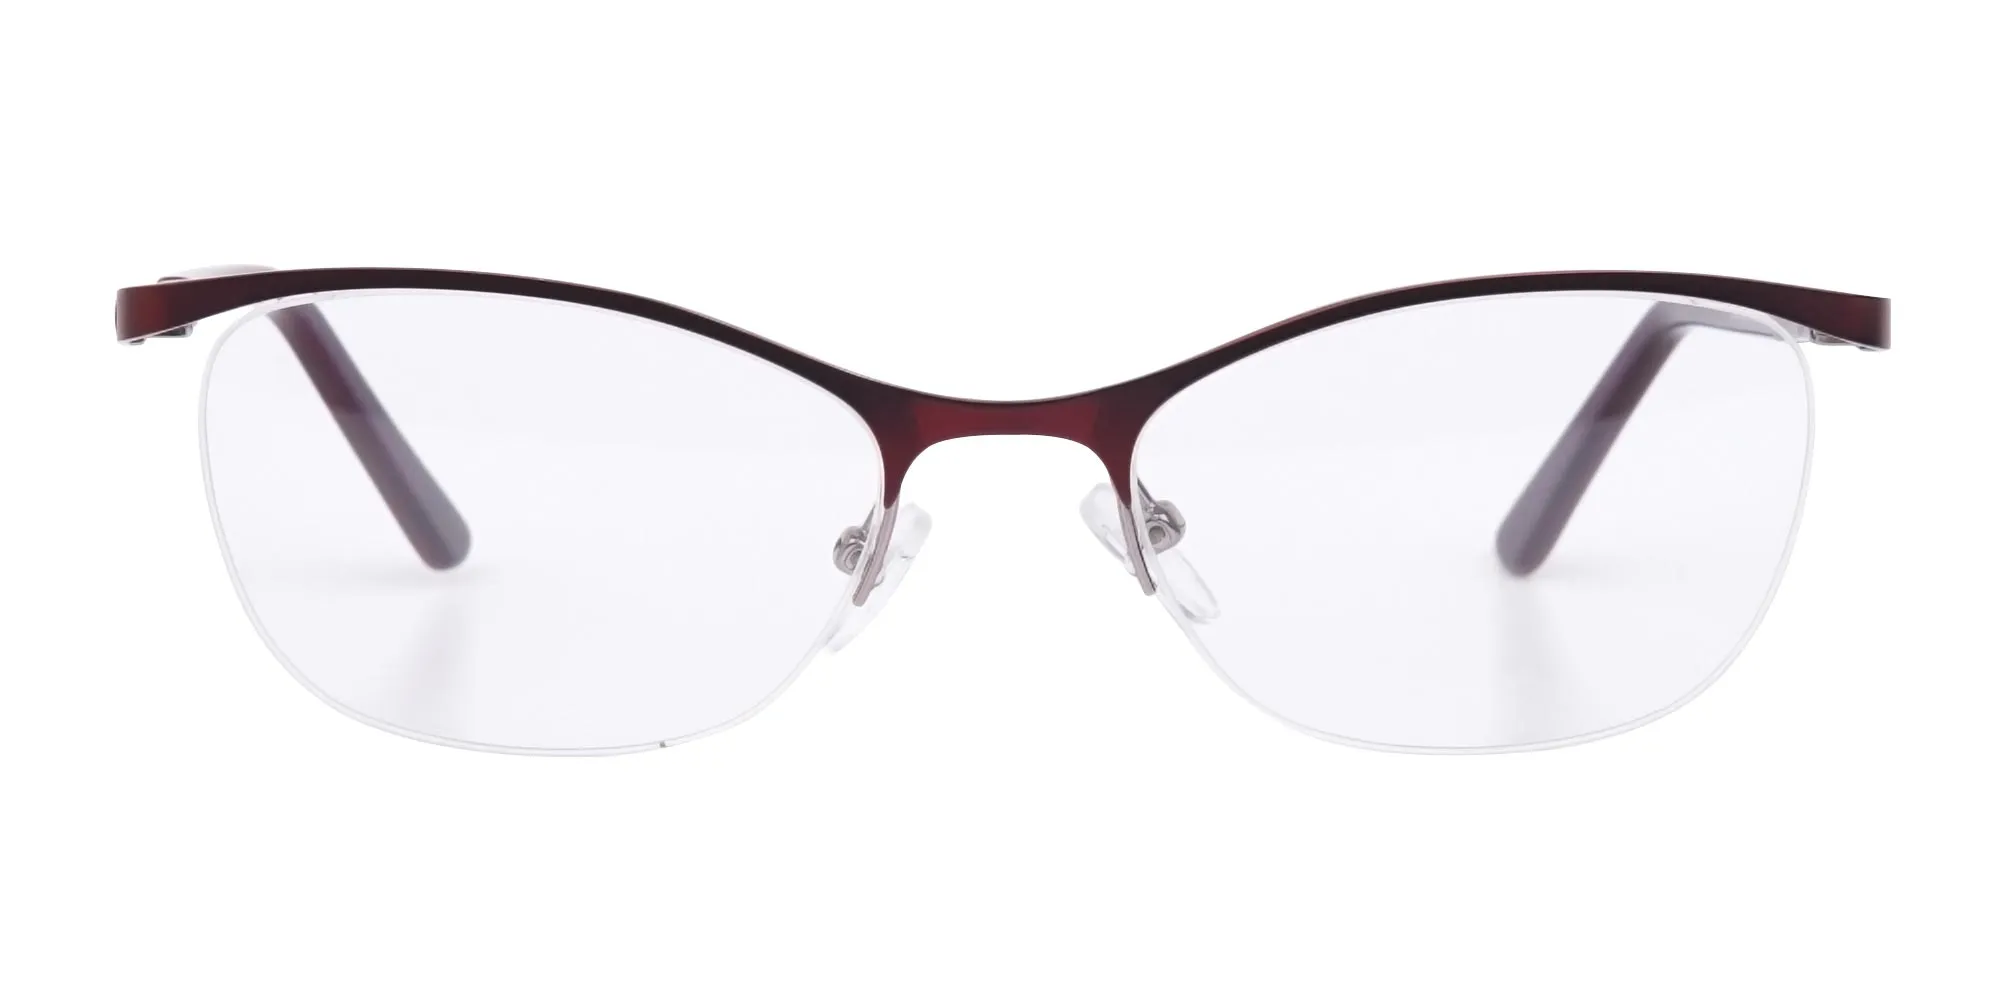 Burgundy Red Oval Cat-Eye Glasses Frame Women-2